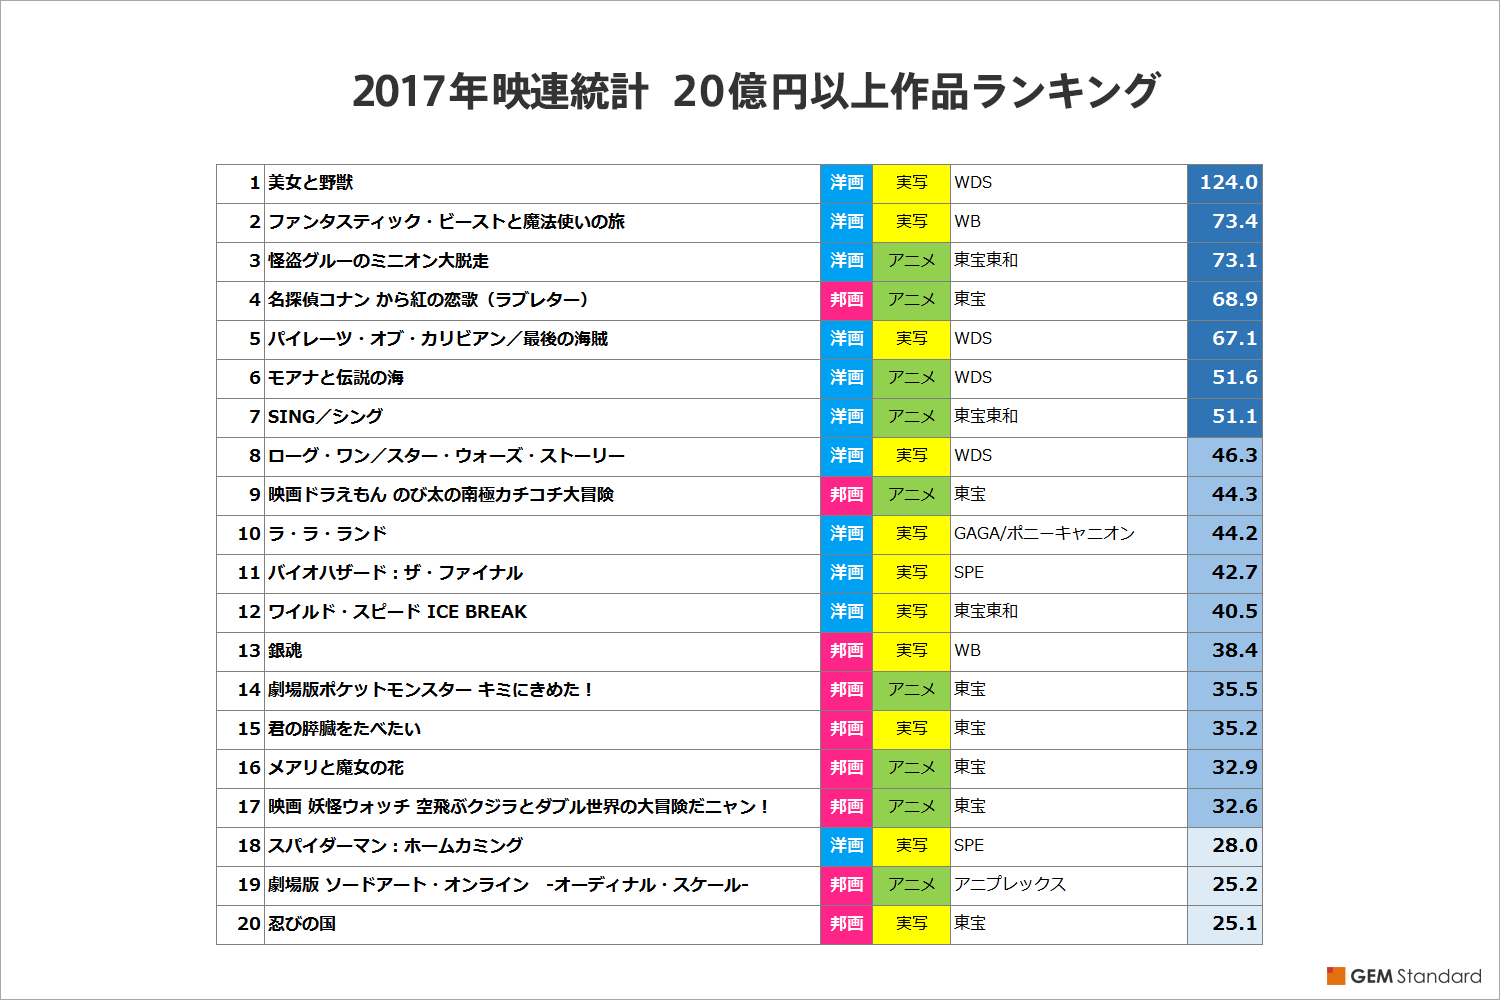 日本 の 映画 興行 収入 ランキング